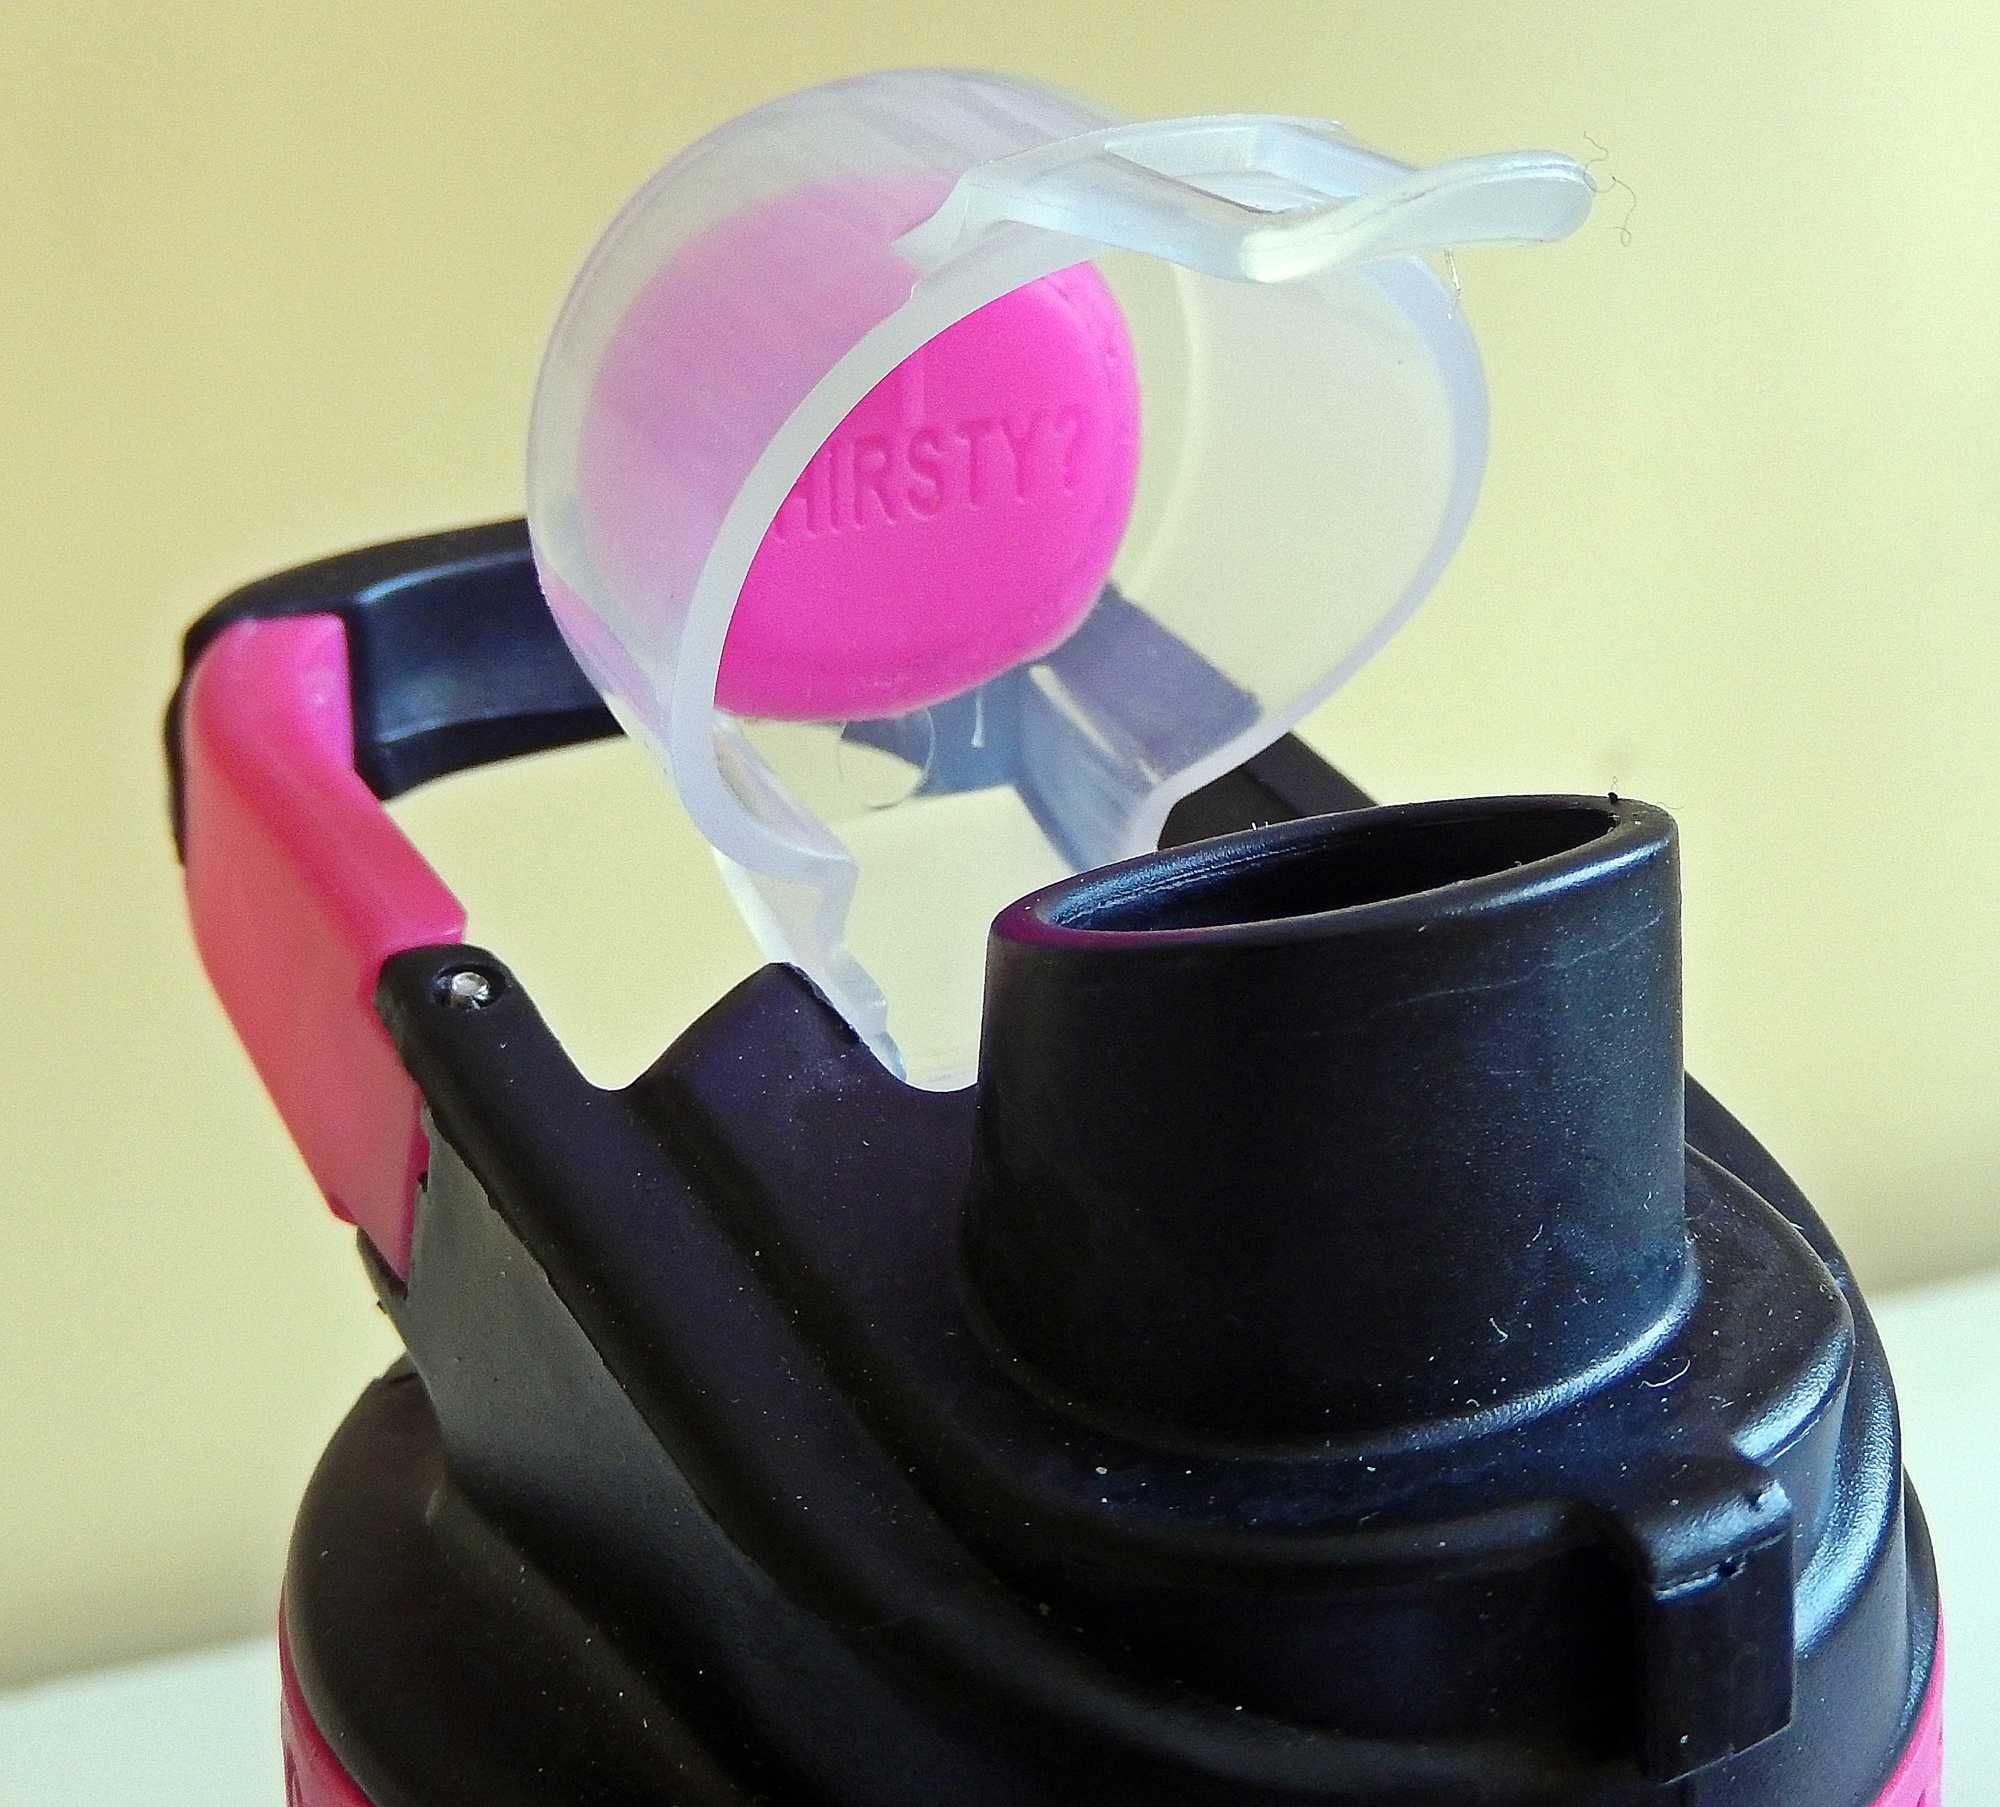 Shaker proteinowy Cool Gear, 24 uncje, różowy, ze sprężyną. Z Tritanu®